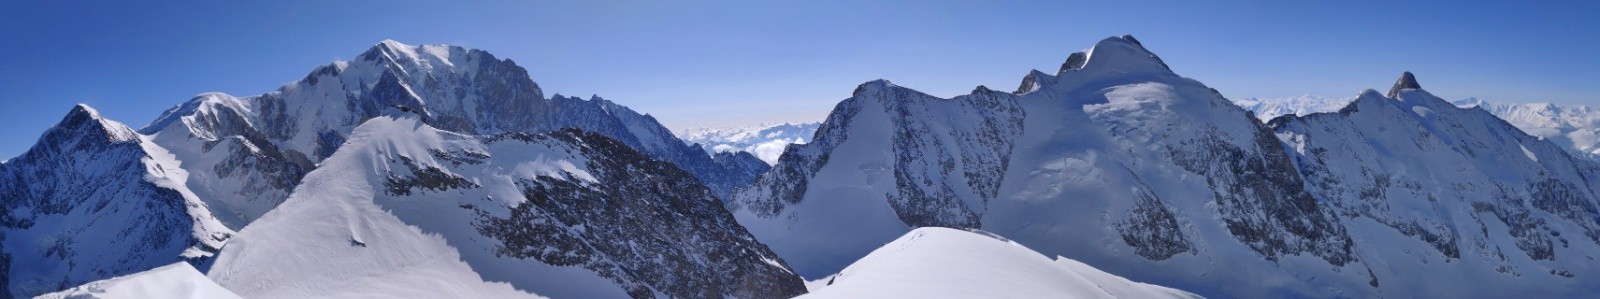 Pano du côté sauvage du massif du Mont Blanc